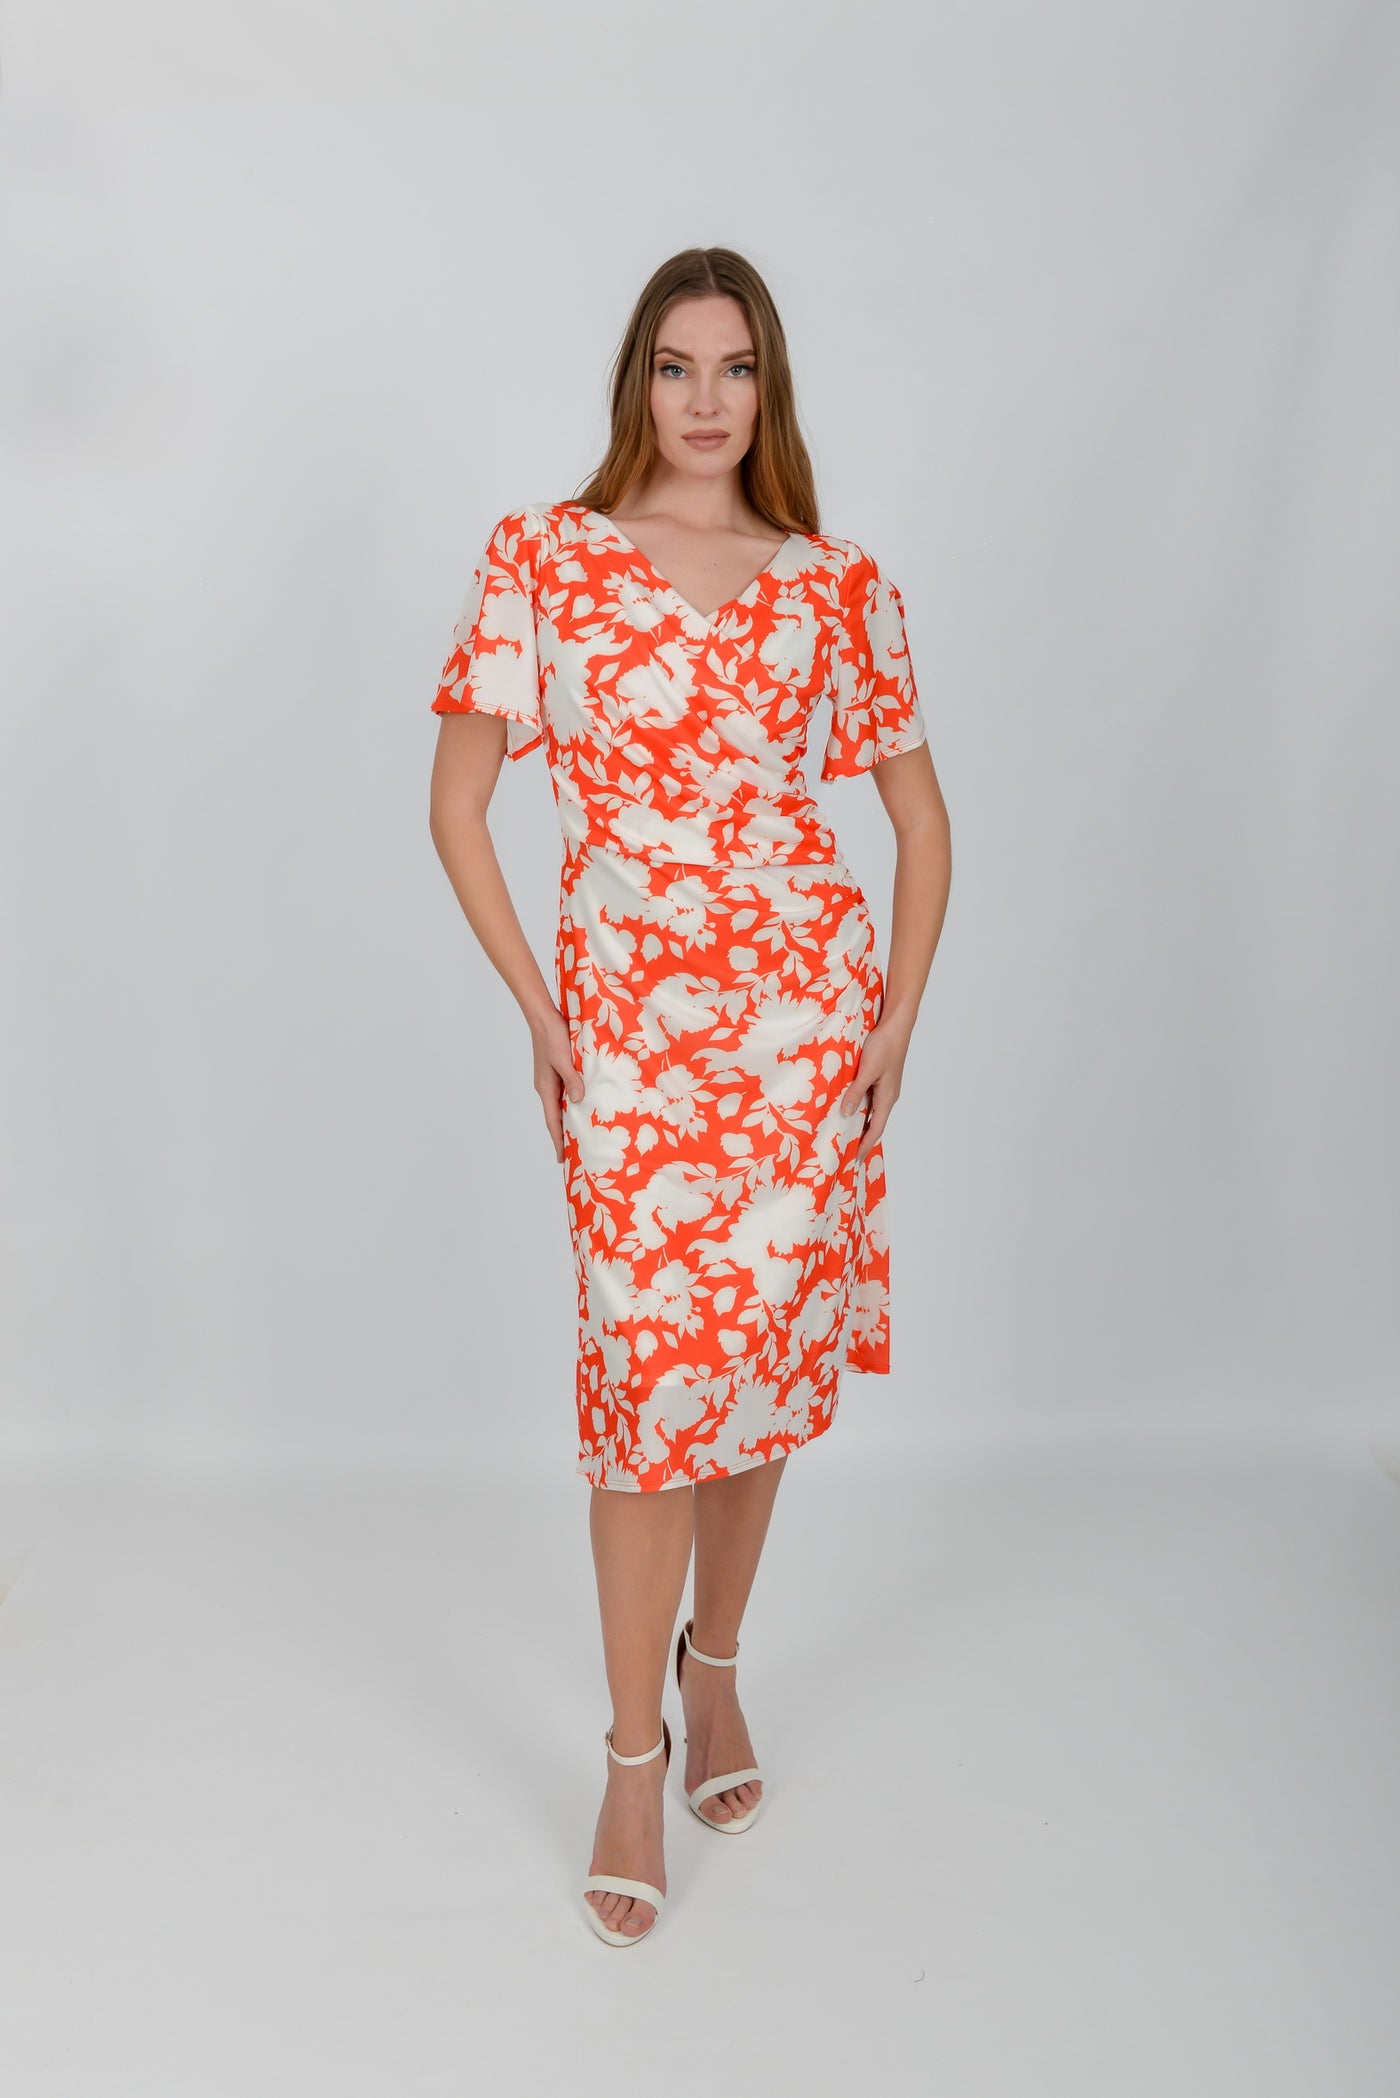 Orange & White Floral Print Wrap Dress